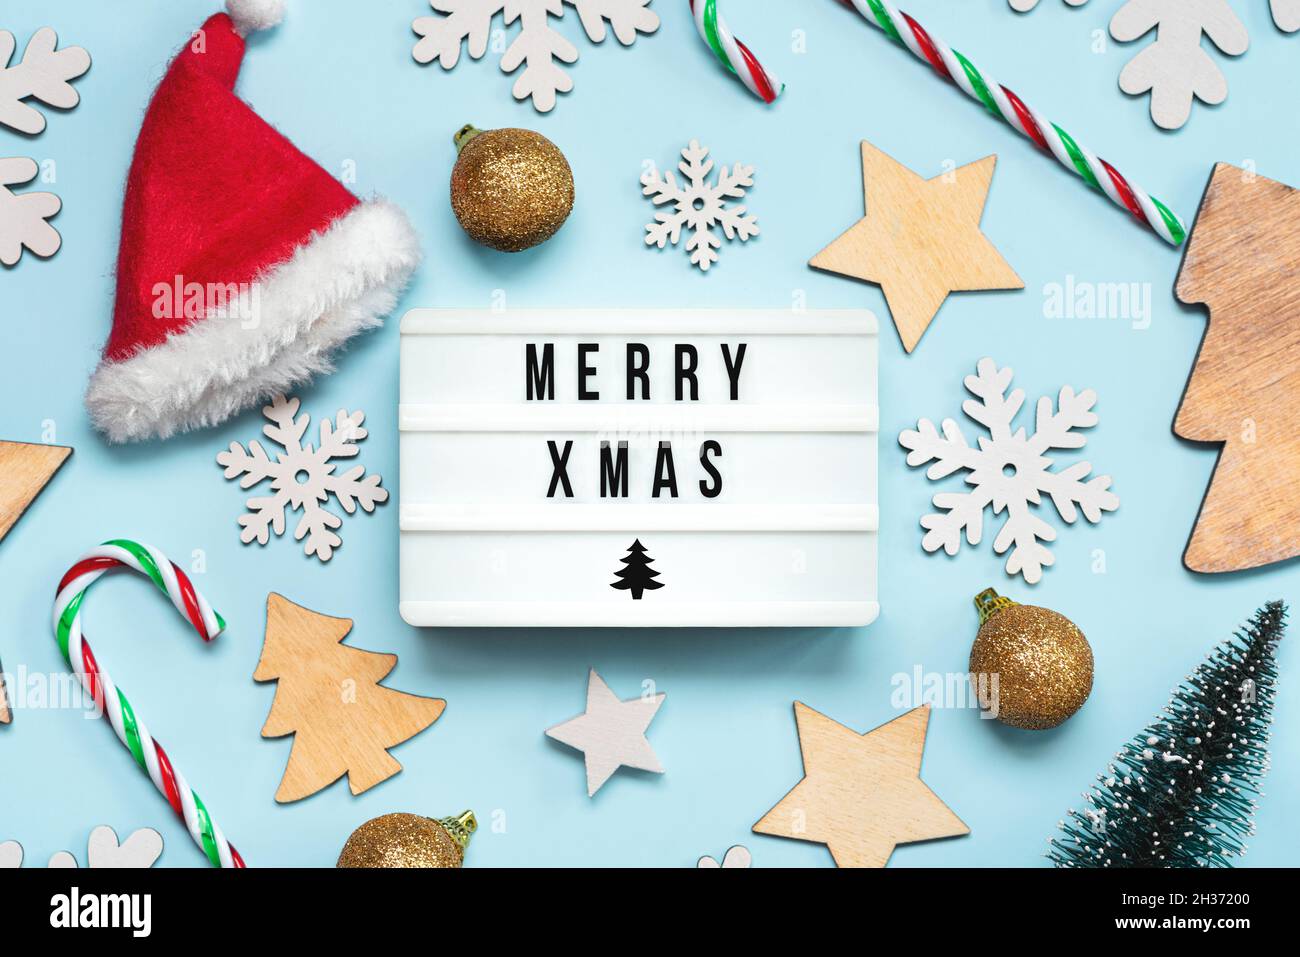 Merry Christmas.Light Box avec le texte Merry Xmas et la décoration de Noël sur fond bleu.Christmas concept background Banque D'Images